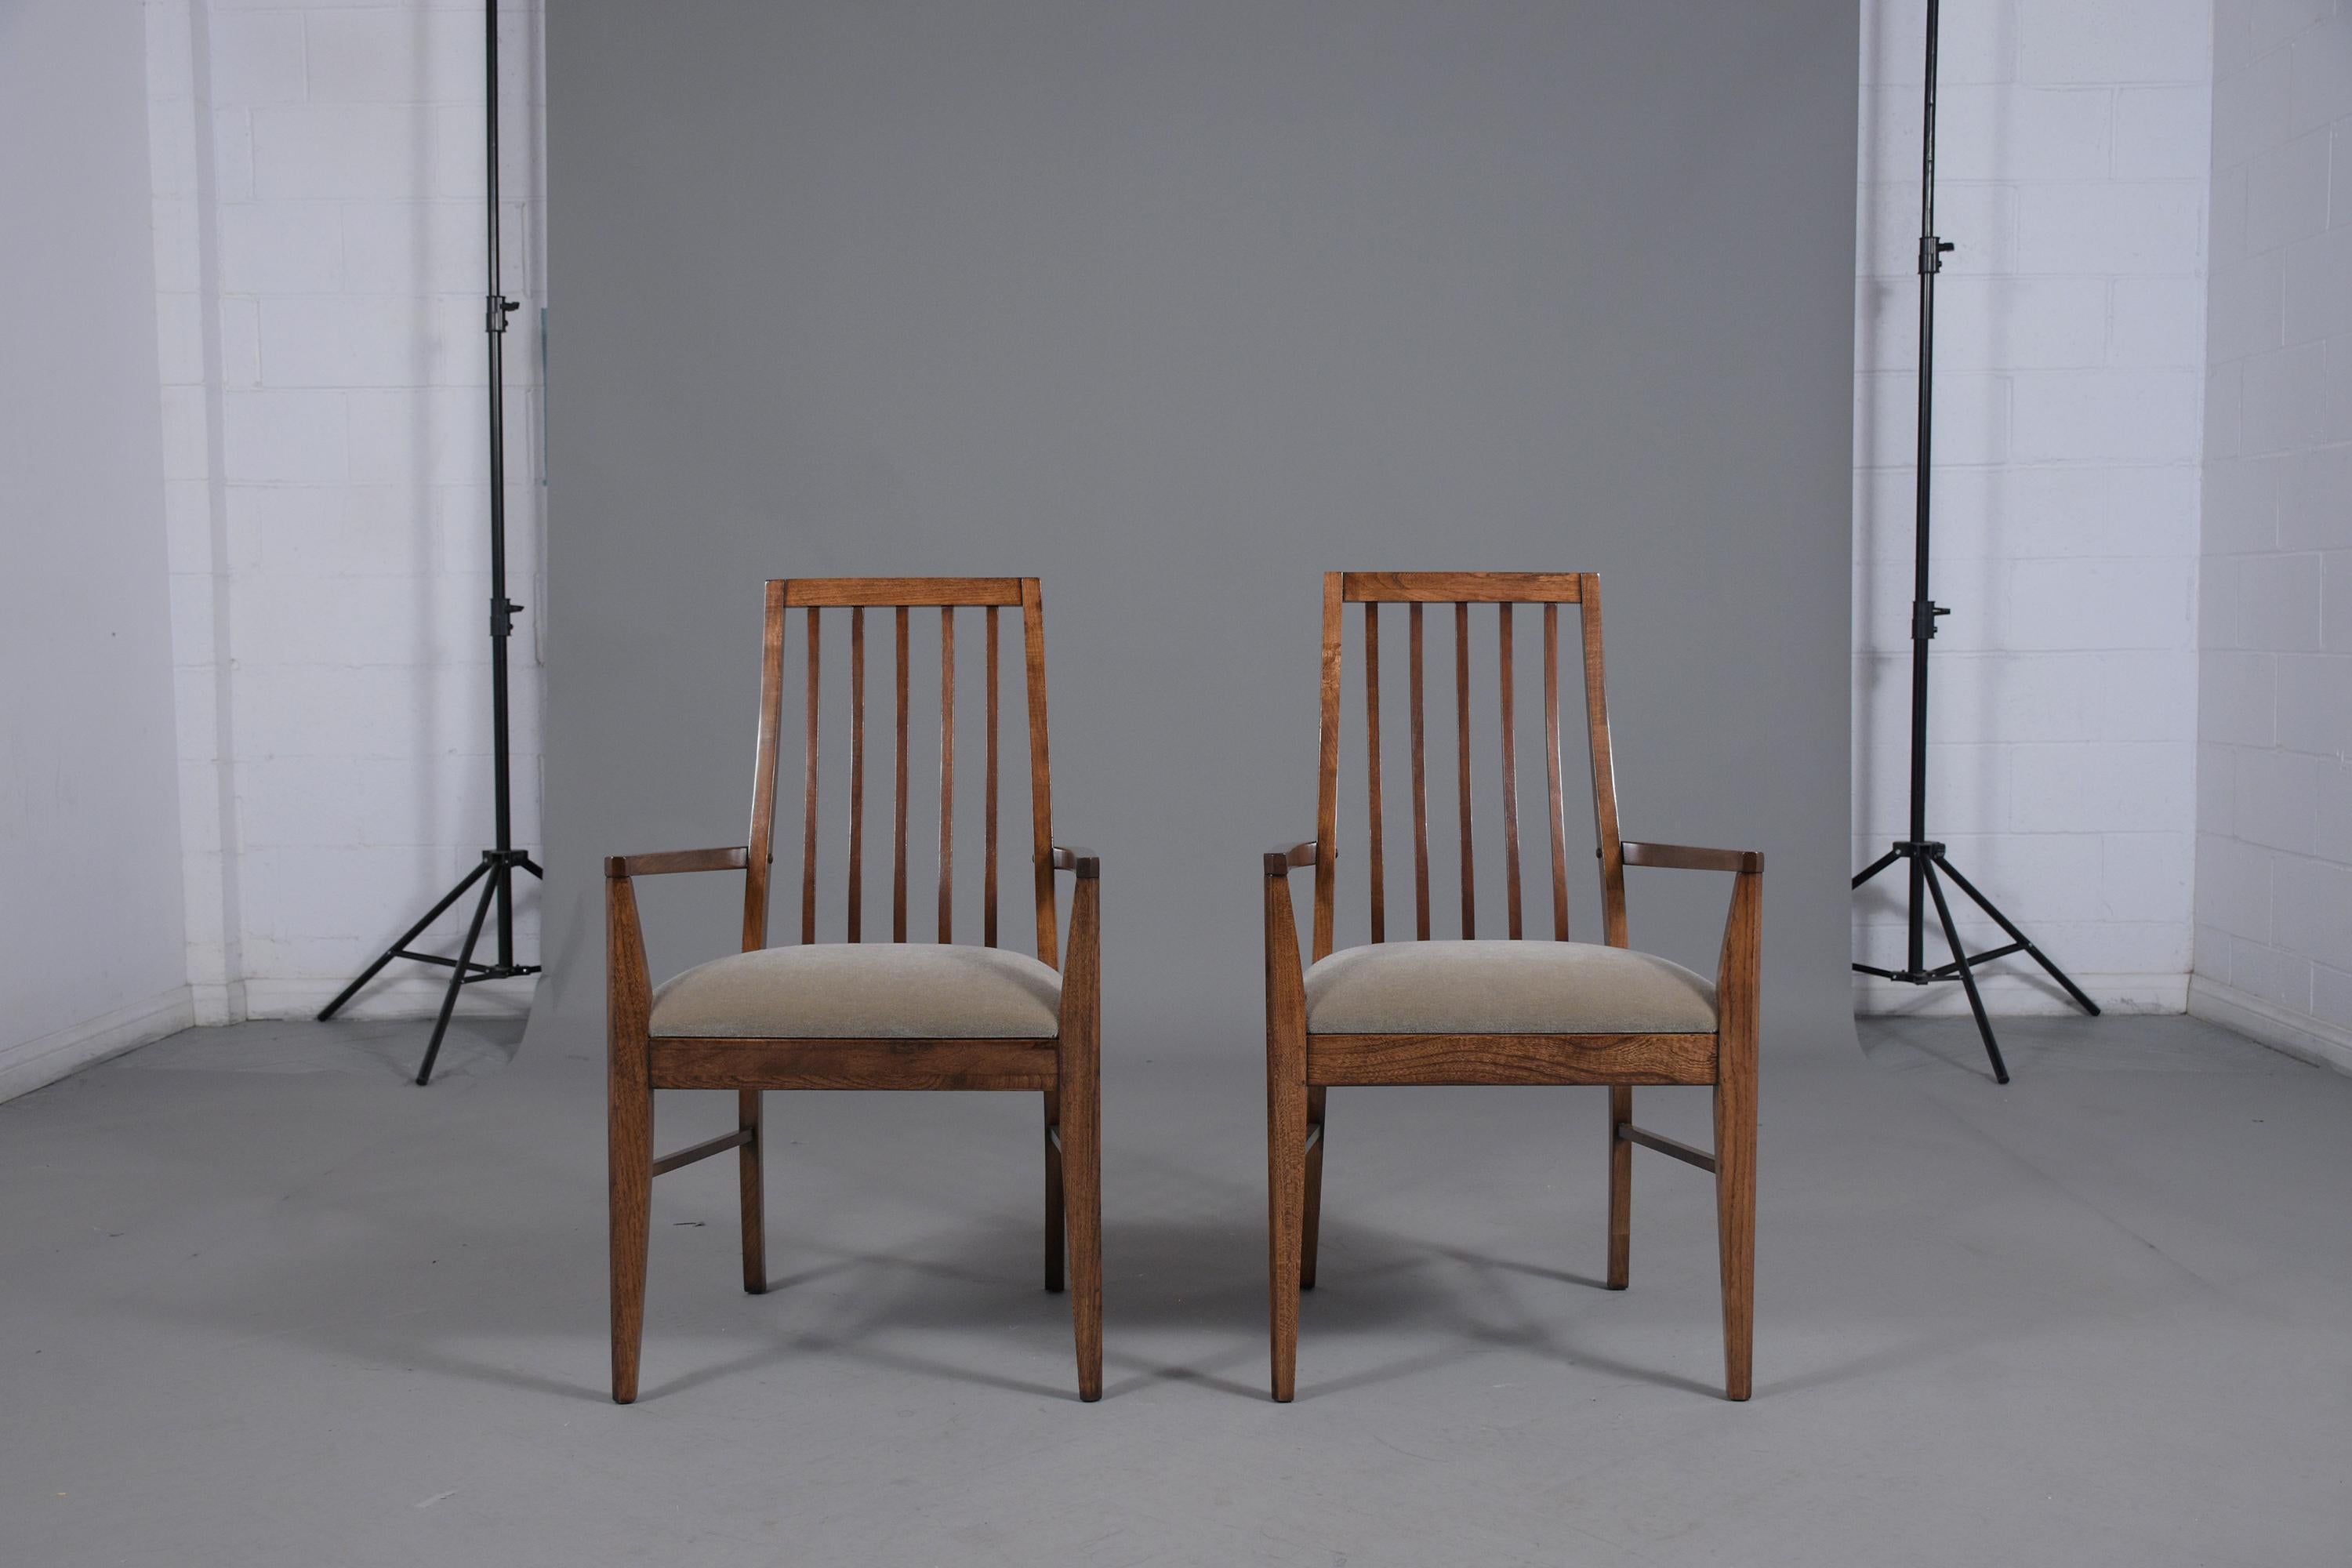 Retournez dans les années 1960 avec notre paire vintage de fauteuils modernes du milieu du siècle, une représentation parfaite du célèbre design et de l'artisanat de l'époque. Fabriquées à la main en bois de noyer, ces chaises ont été remises au